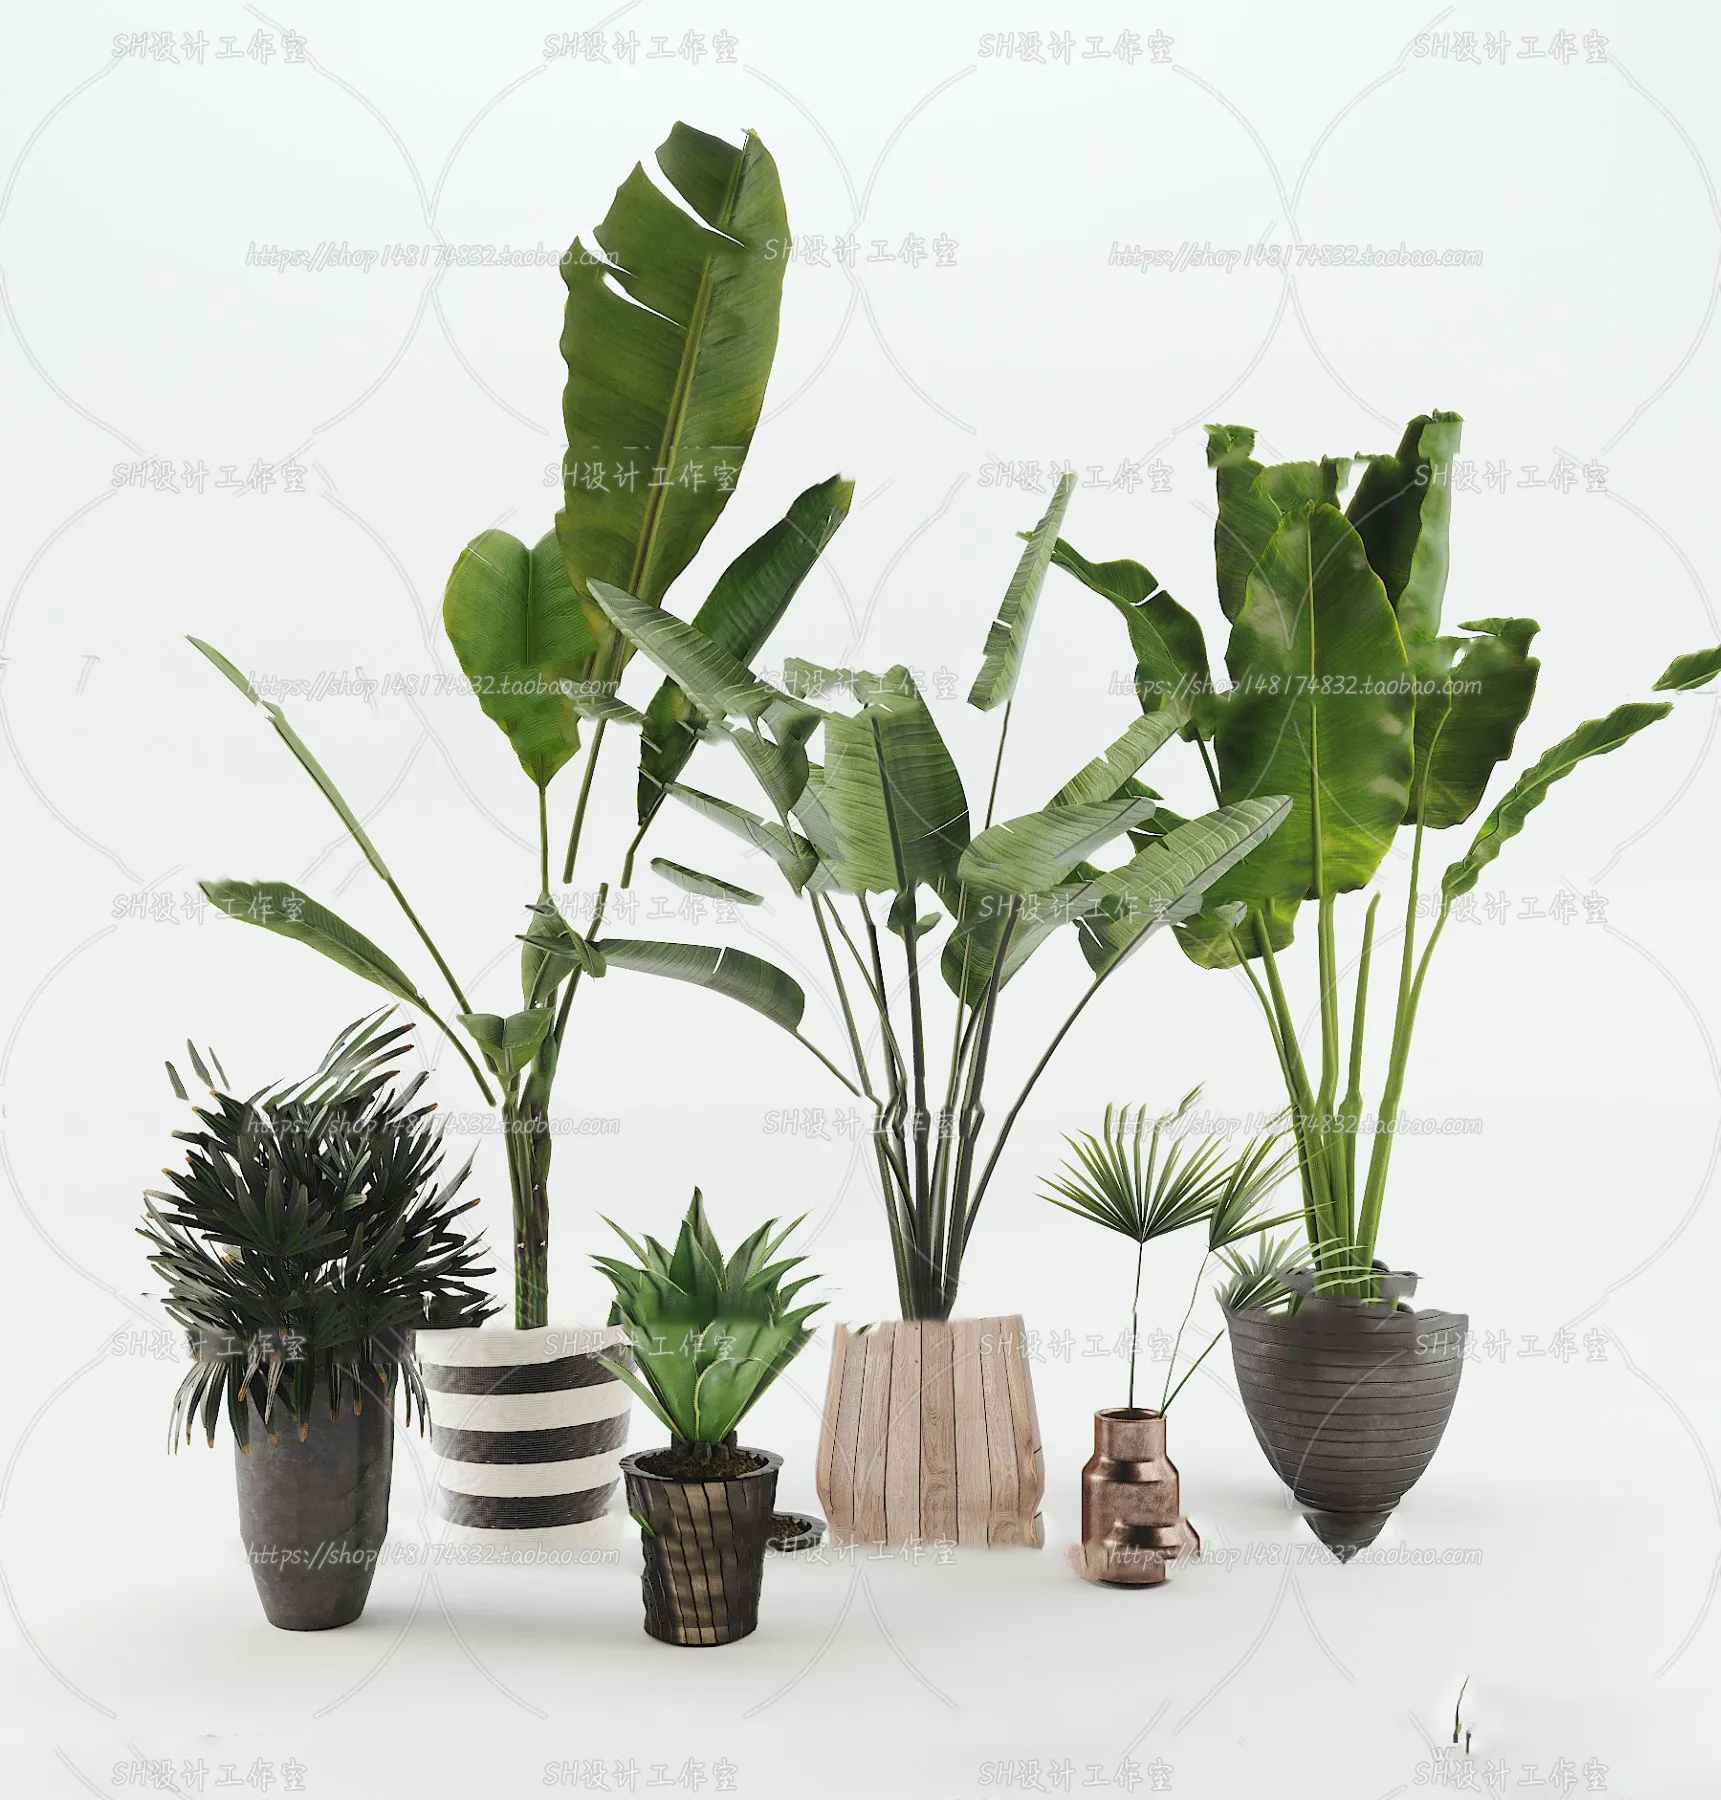 PLANT 3D MODELS – 078